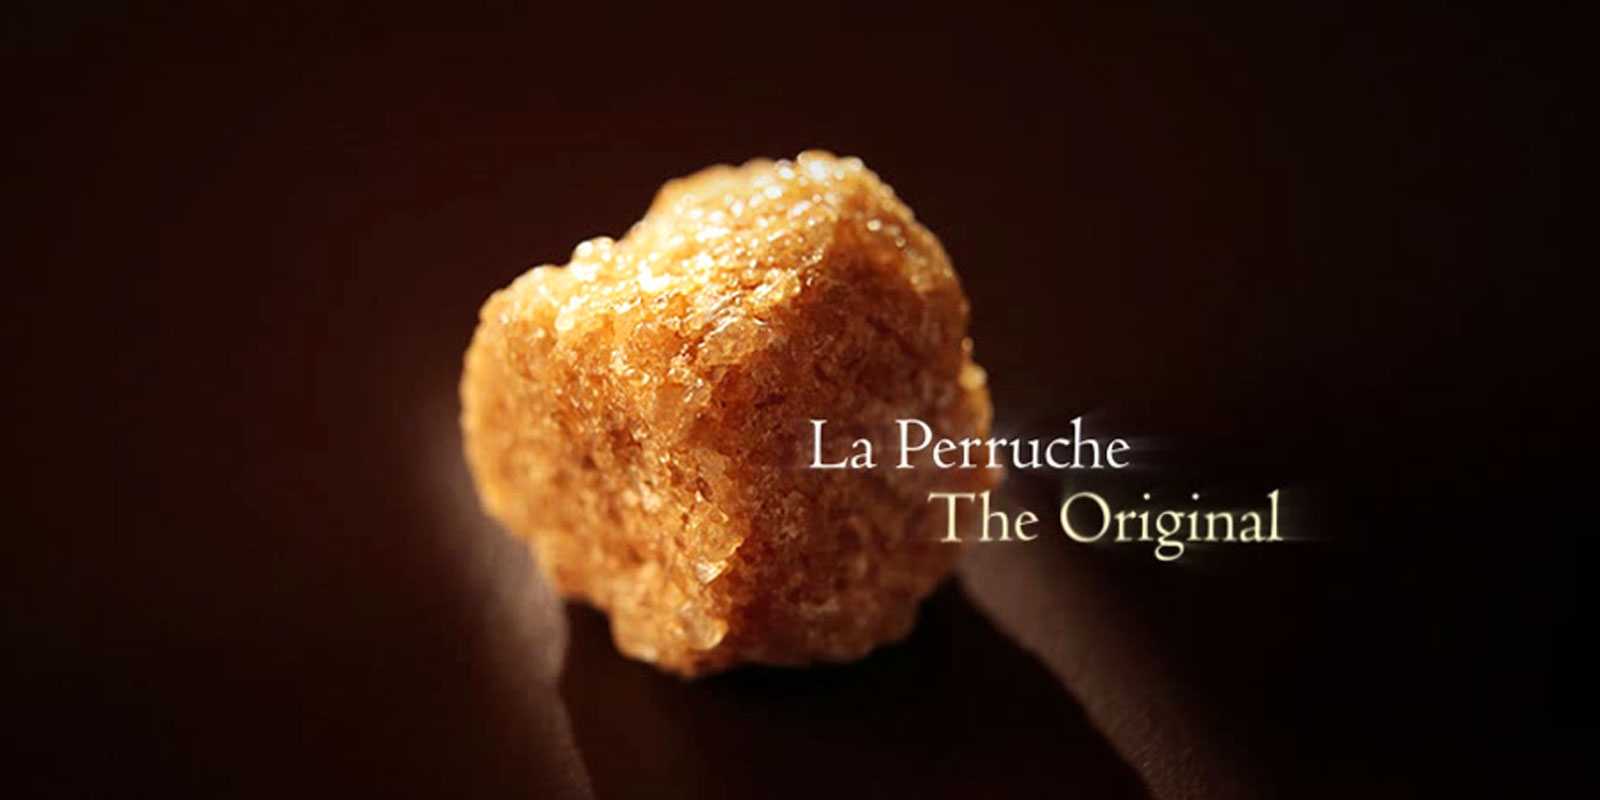 La Perruche - cukier trzcinowy La Perruche to produkt wyjatkowy, o wyjatkowym smaku, ktory zachwyci wszystkich, ktorzy cenia sobie delikatny i wyrafinowany smak. Po prostu wywoluje czysta przyjemnosc dla zmyslow. La Perruche wystepuje w postaci nieregularnych kostek cukru w kolorze bialym lub zlotobrazowym. Krystaliczna forma w shakerze zwana takze kaskada.